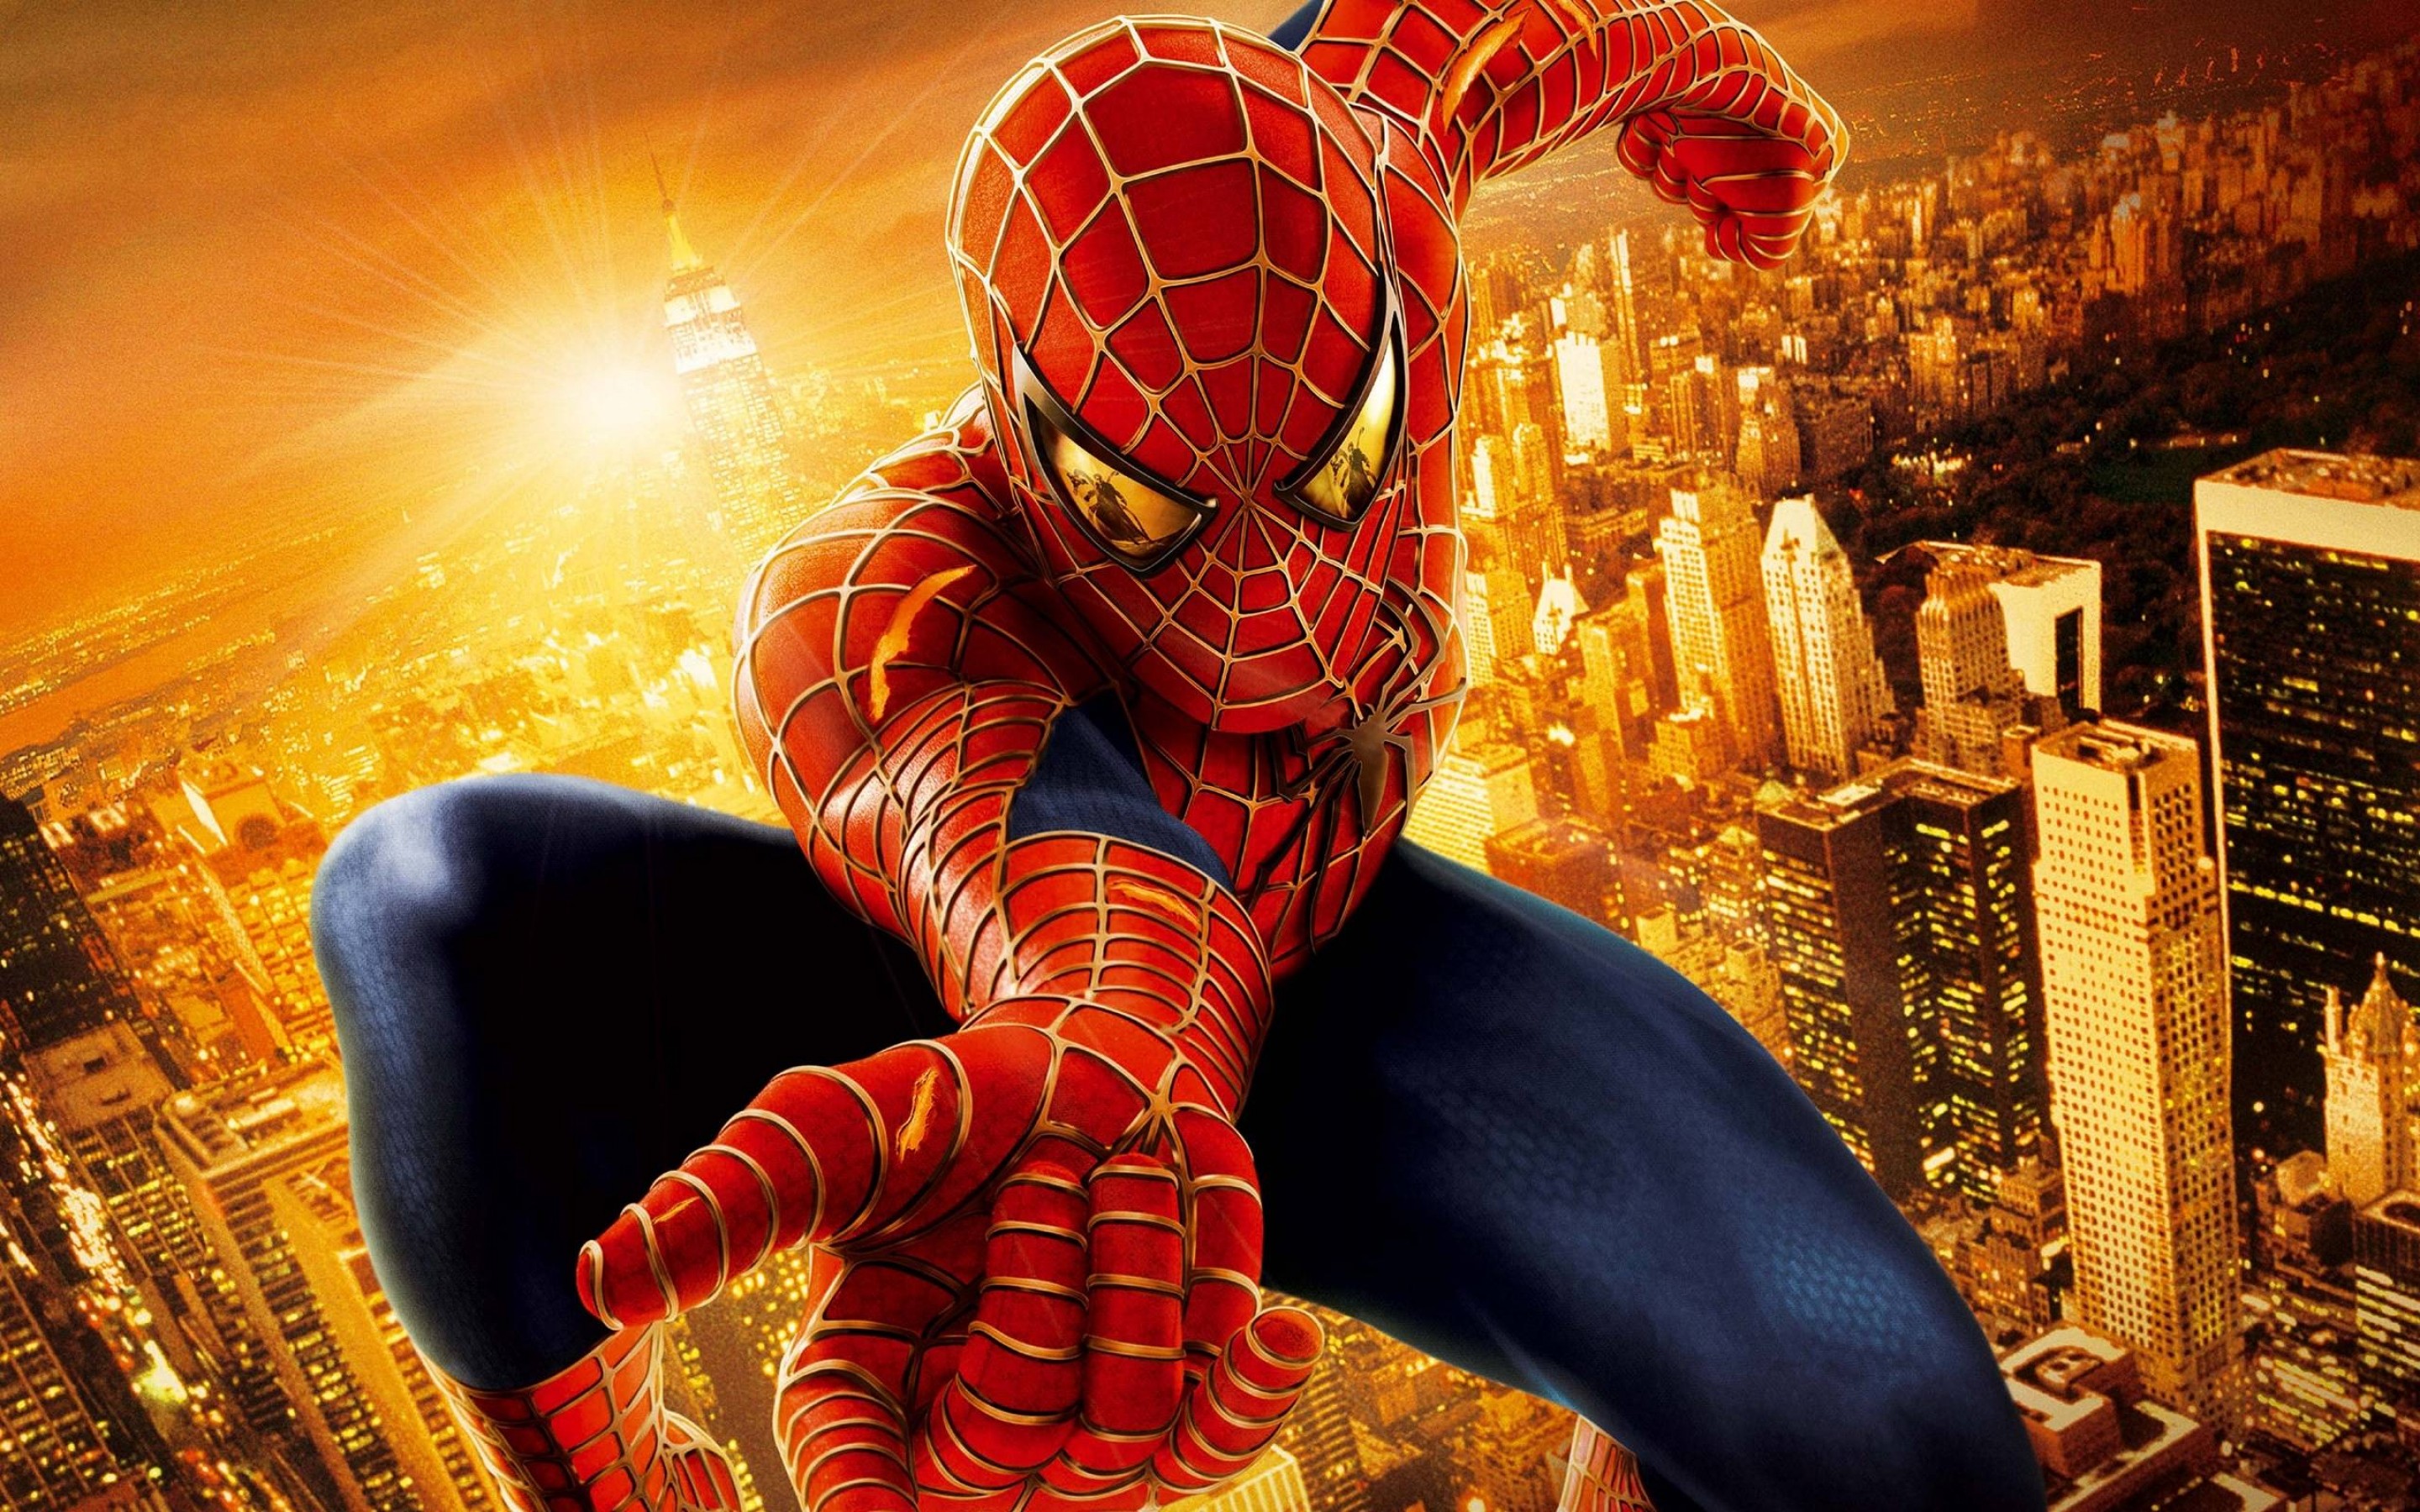 Movie Spider-Man 2 HD Wallpaper | Background Image